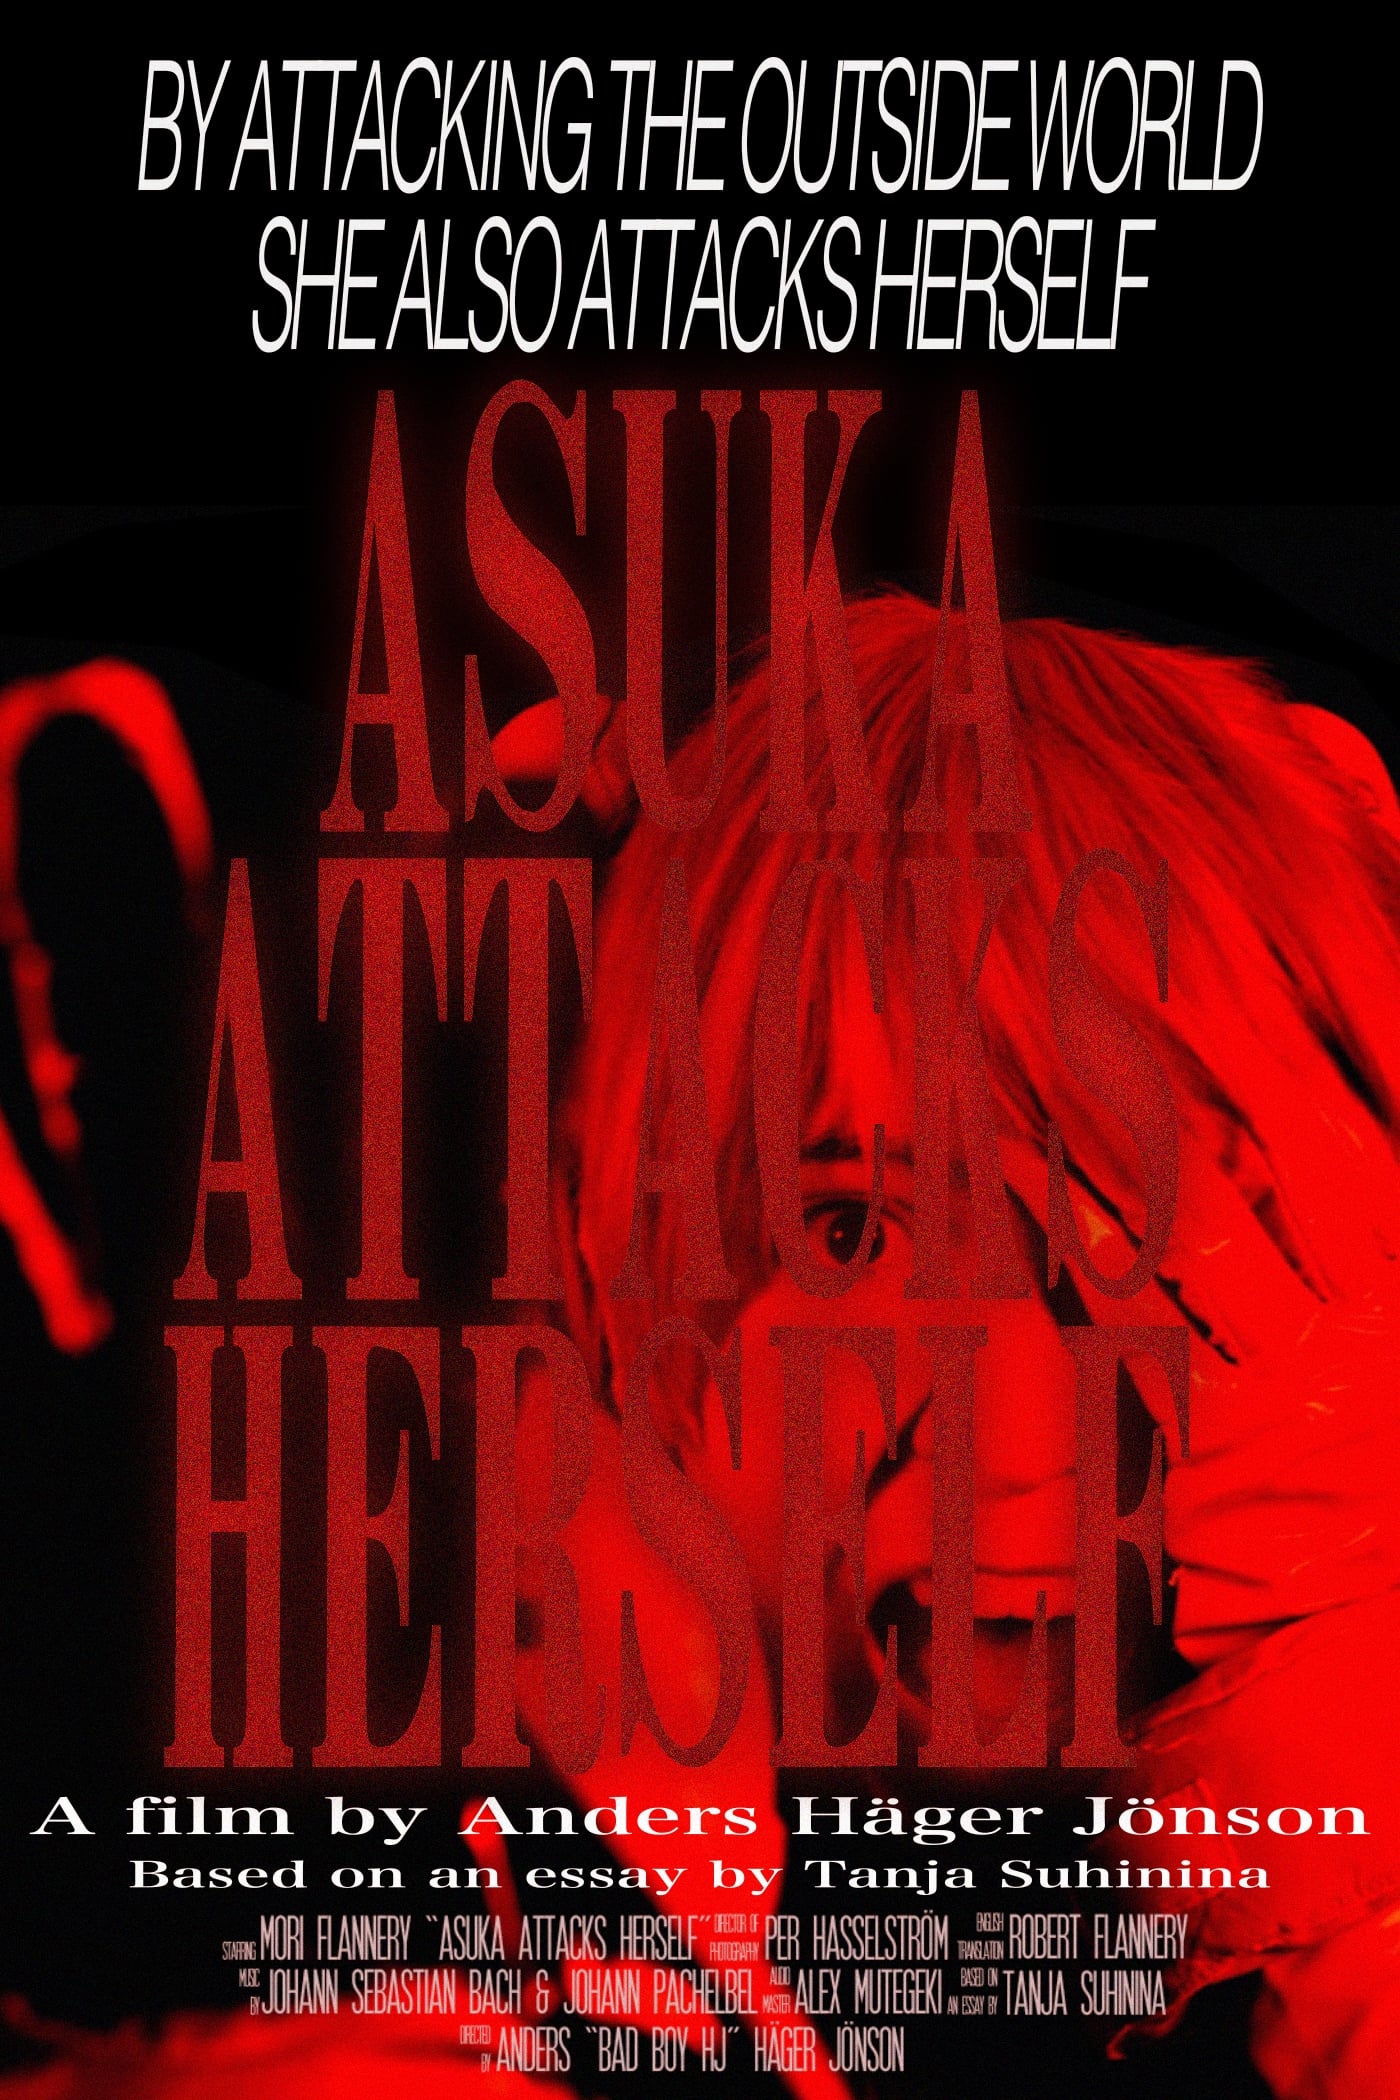 Asuka Attacks Herself